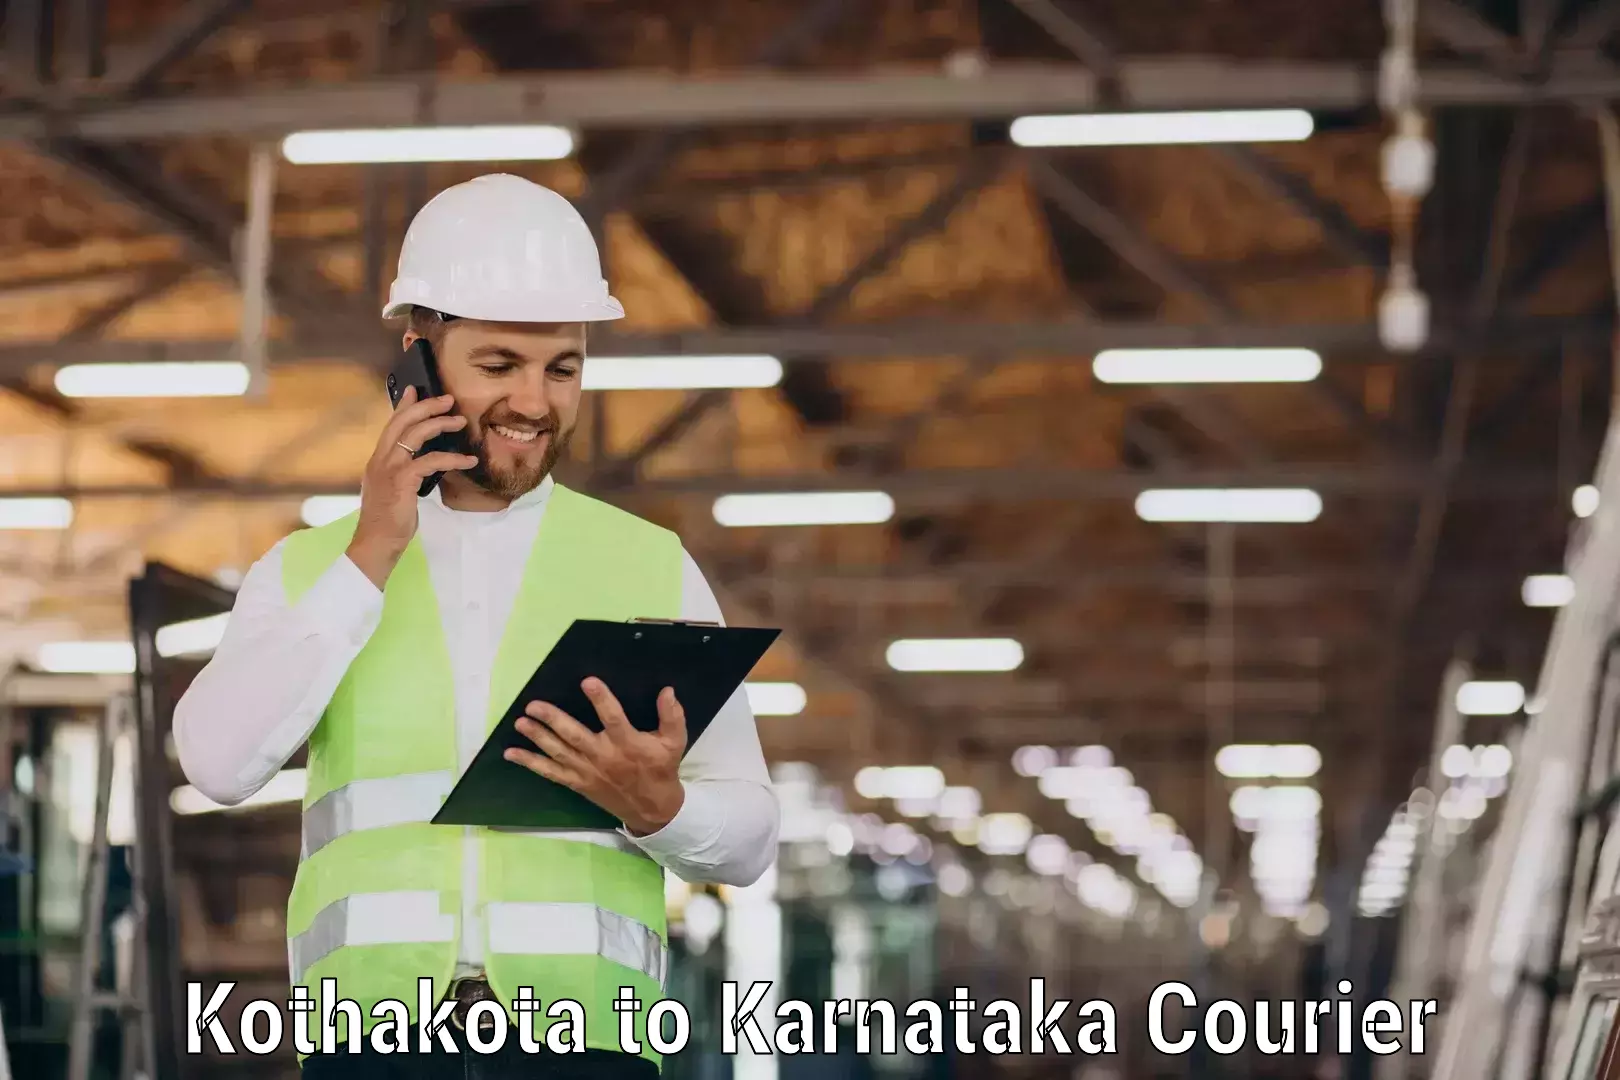 Multi-service courier options Kothakota to Srirangapatna